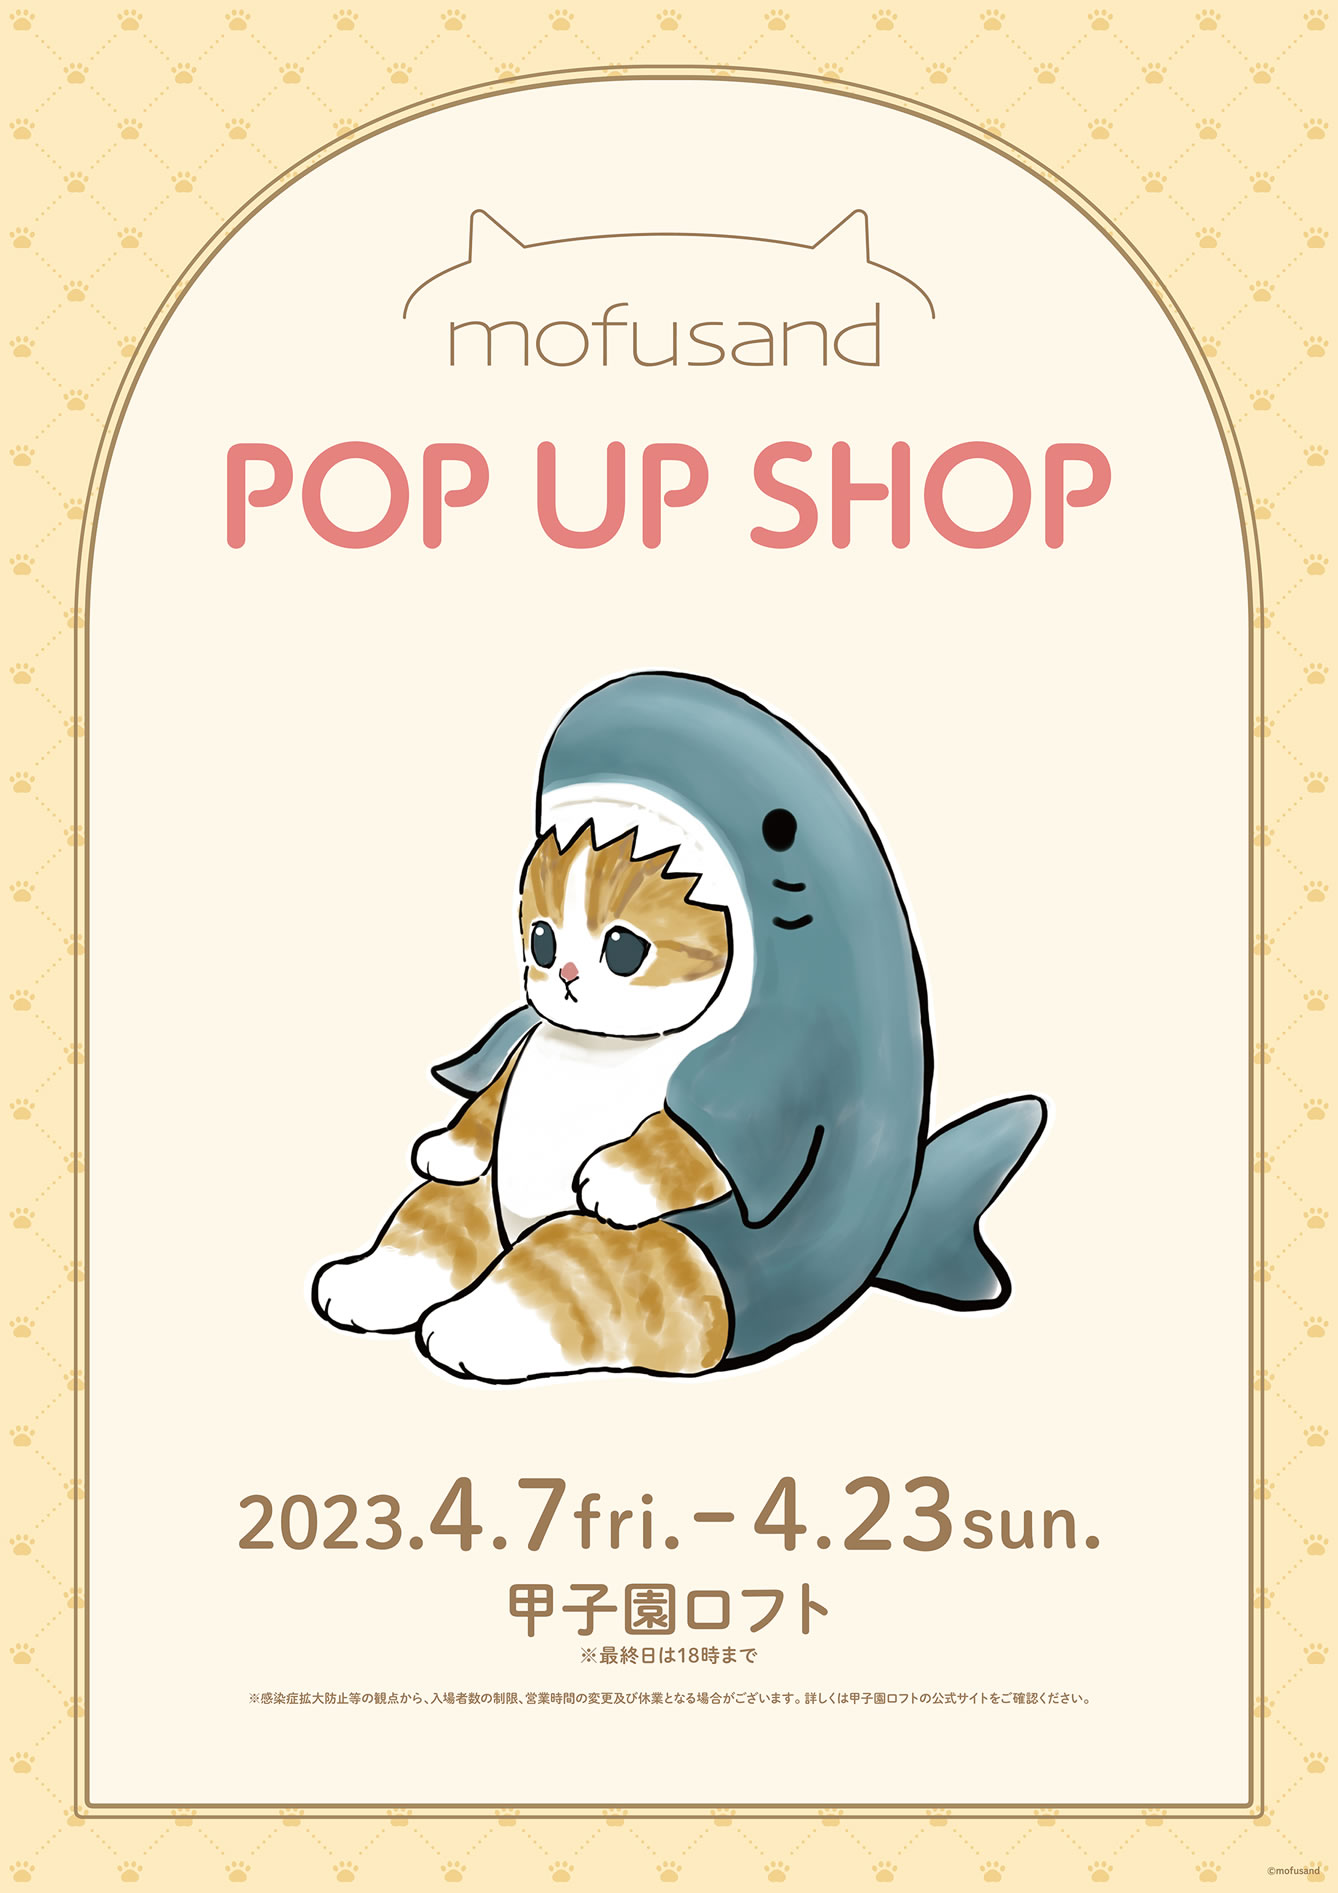 mofusand ポップアップストア in 甲子園ロフト 2023年4月7日より開催!